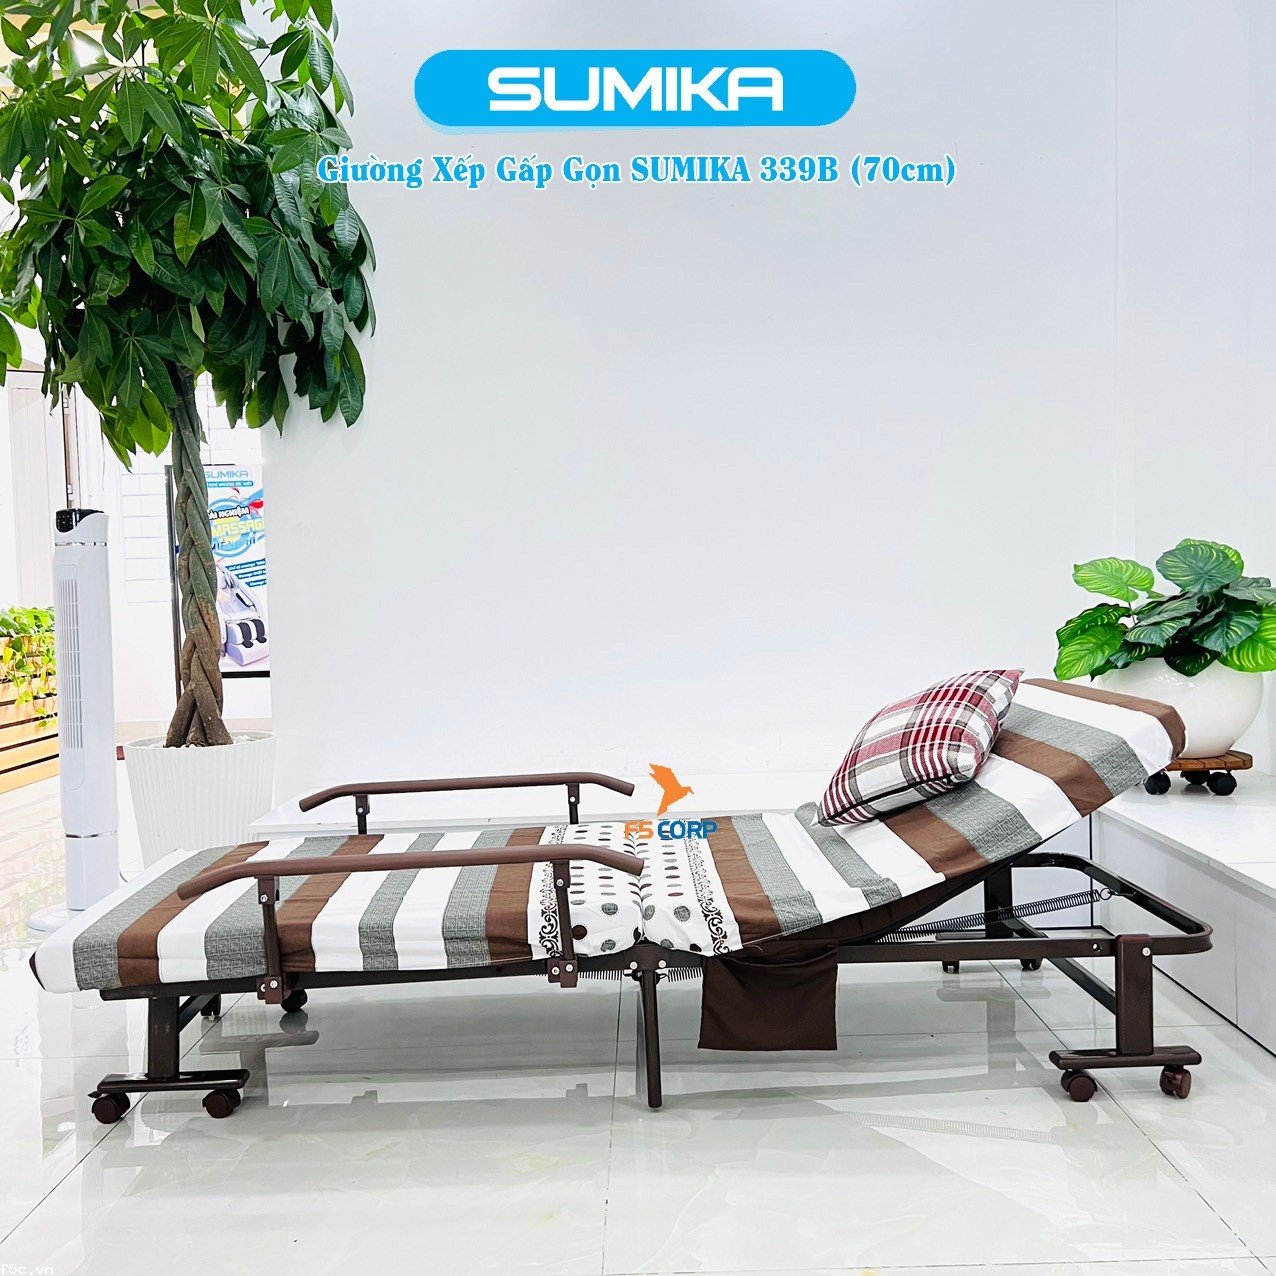 Giường nệm xếp gọn đa năng kiểu dáng Hàn Quốc SUMIKA 339B, rộng 70cm